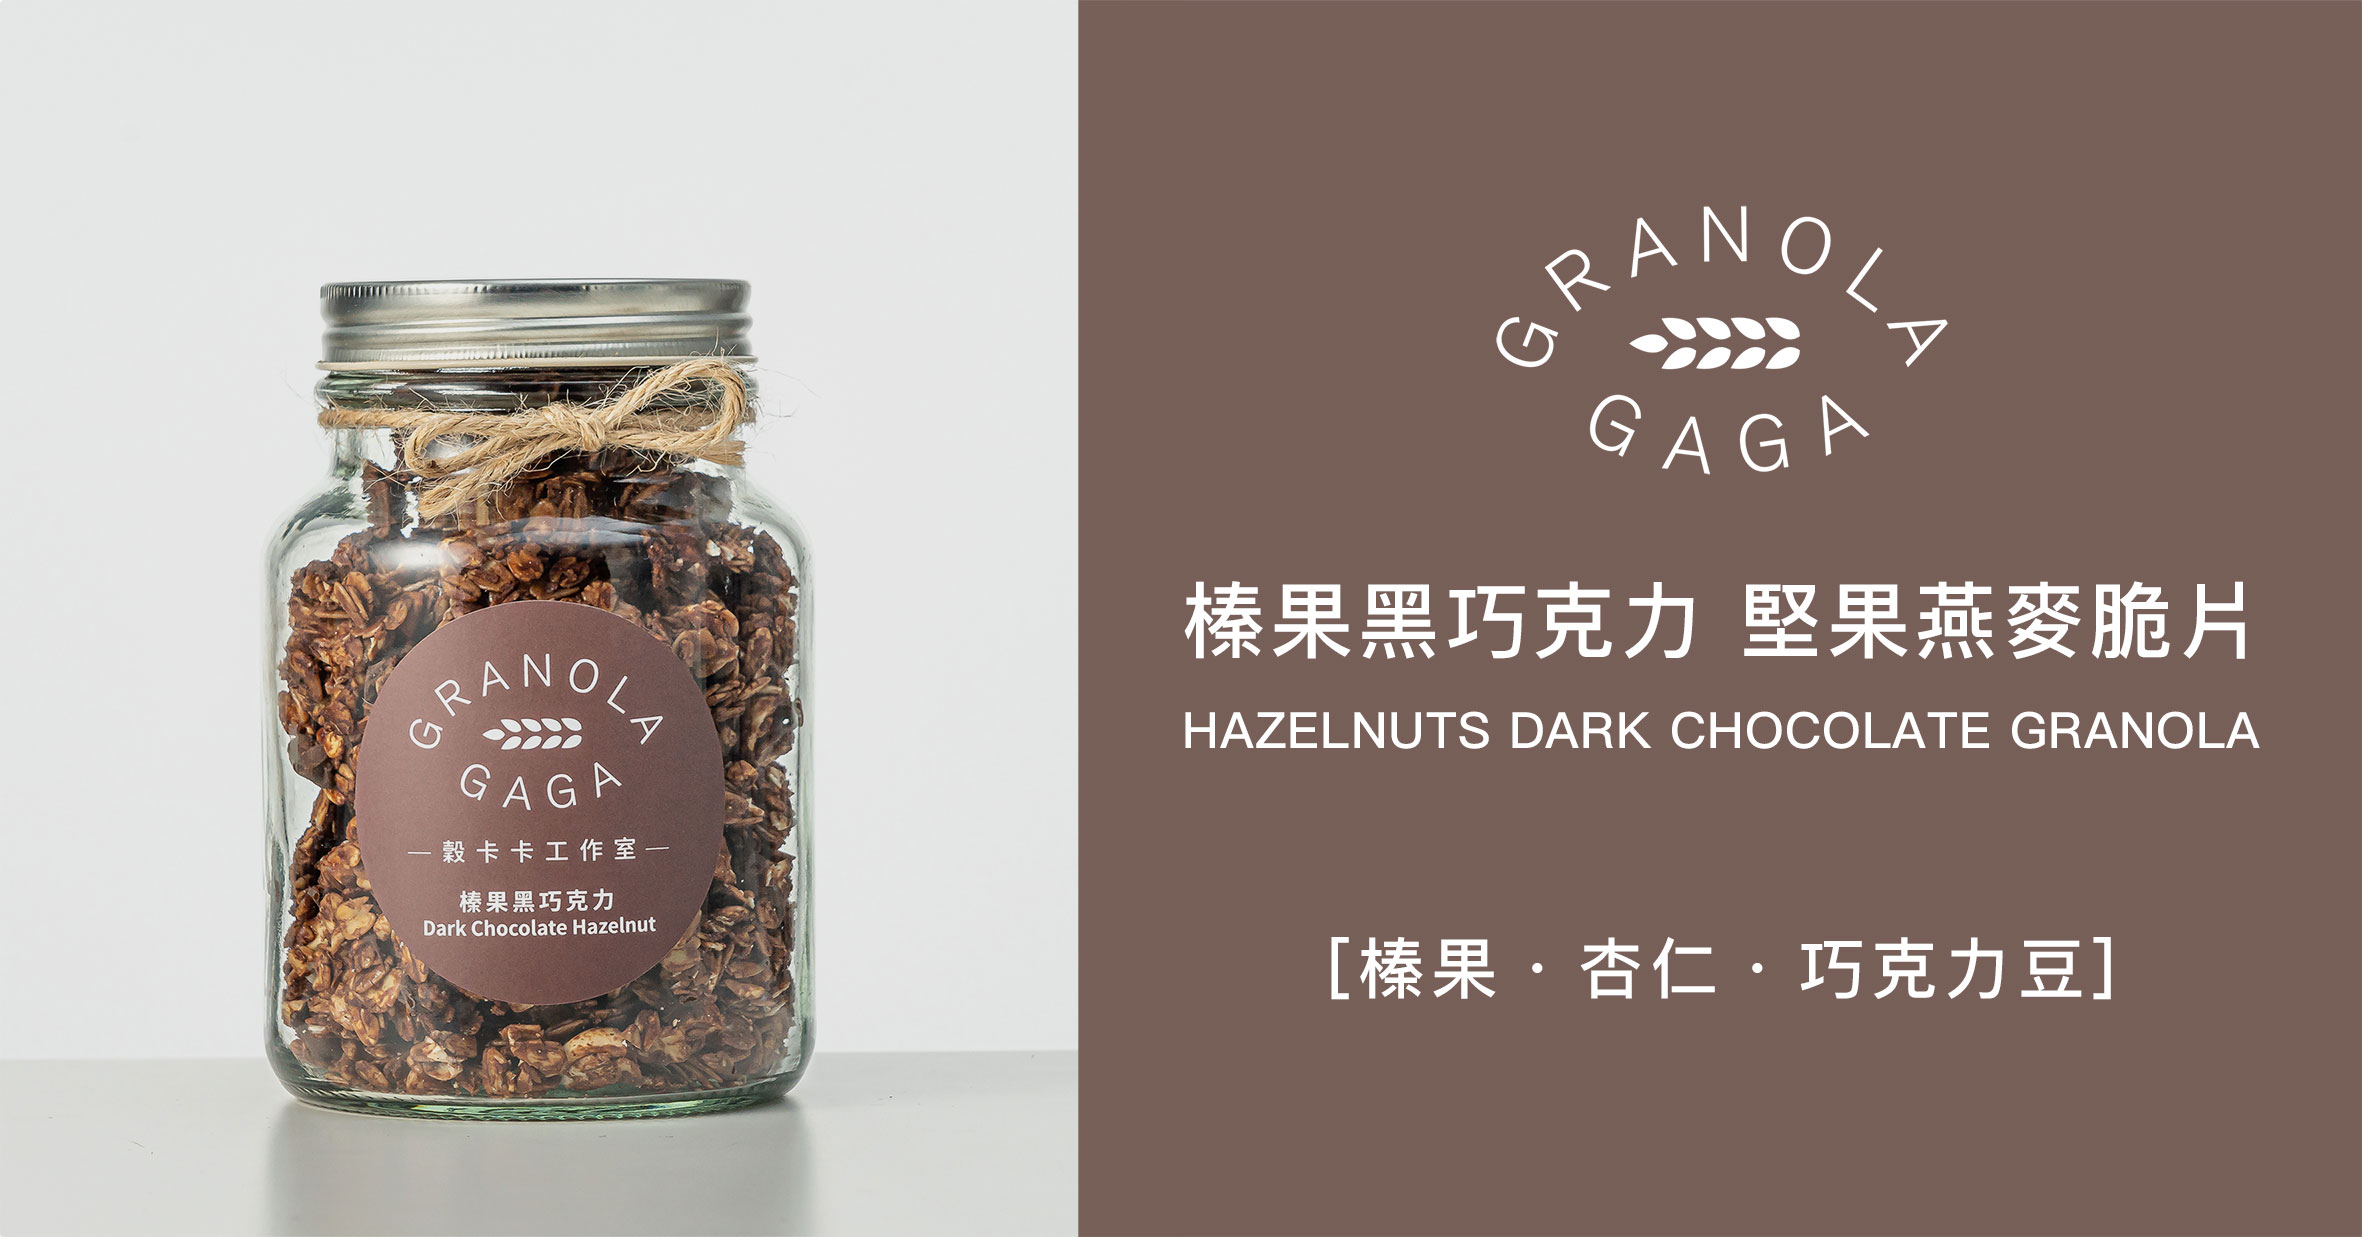 一瓶穀卡卡榛果黑巧克力堅果燕麥脆片玻璃罐